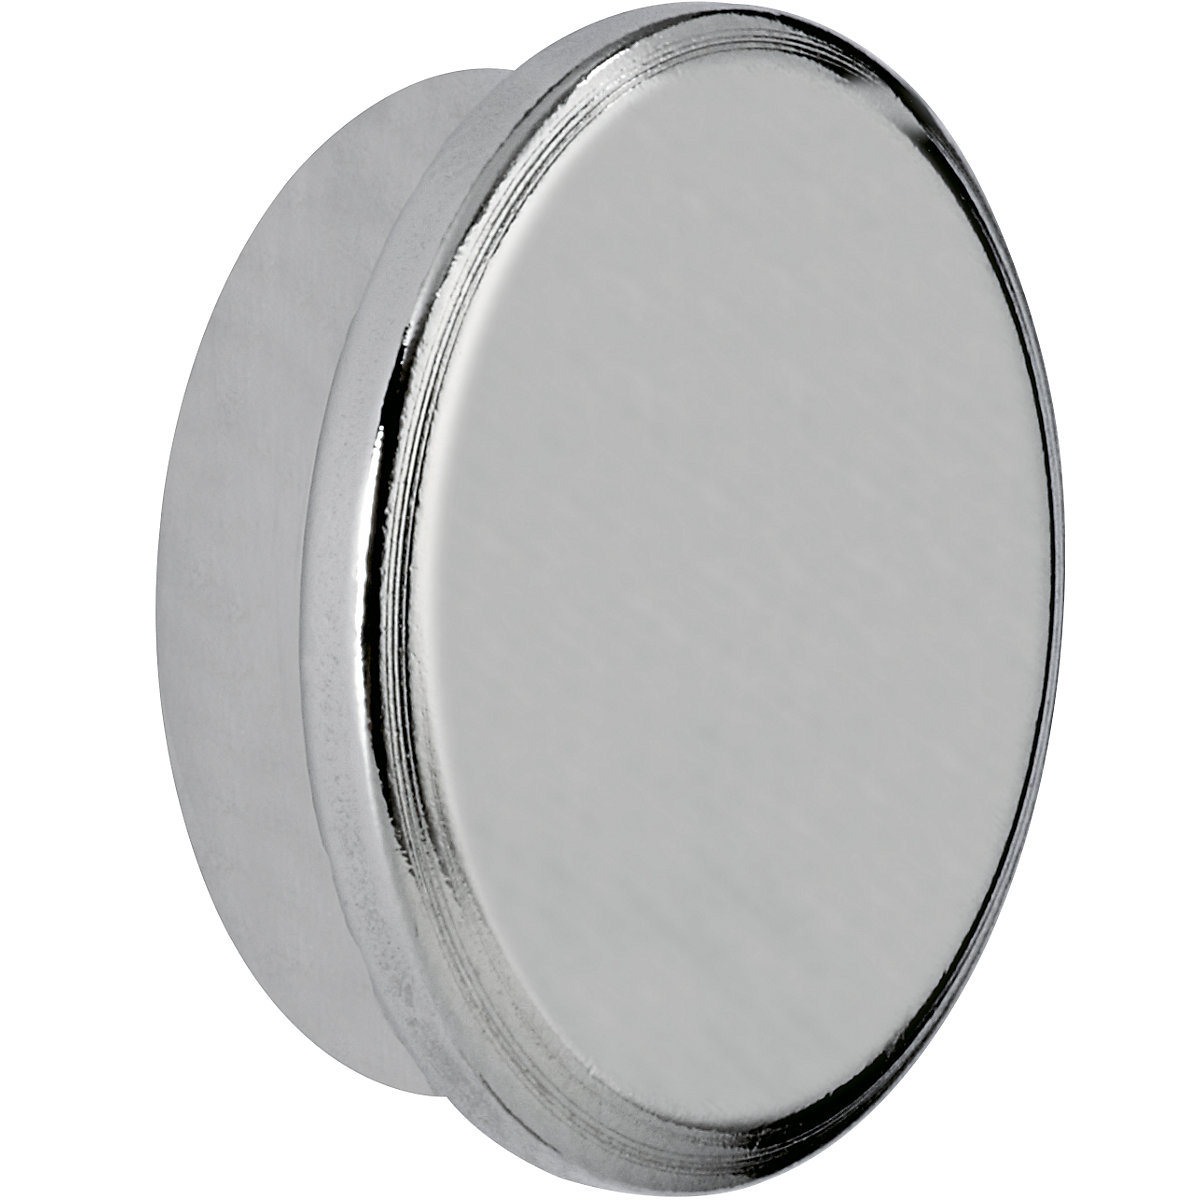 Silný neodymový magnet – MAUL, kruhový tvar, Ø 30 mm, adhezní síla 21 kg, bal.j. 5 ks-5